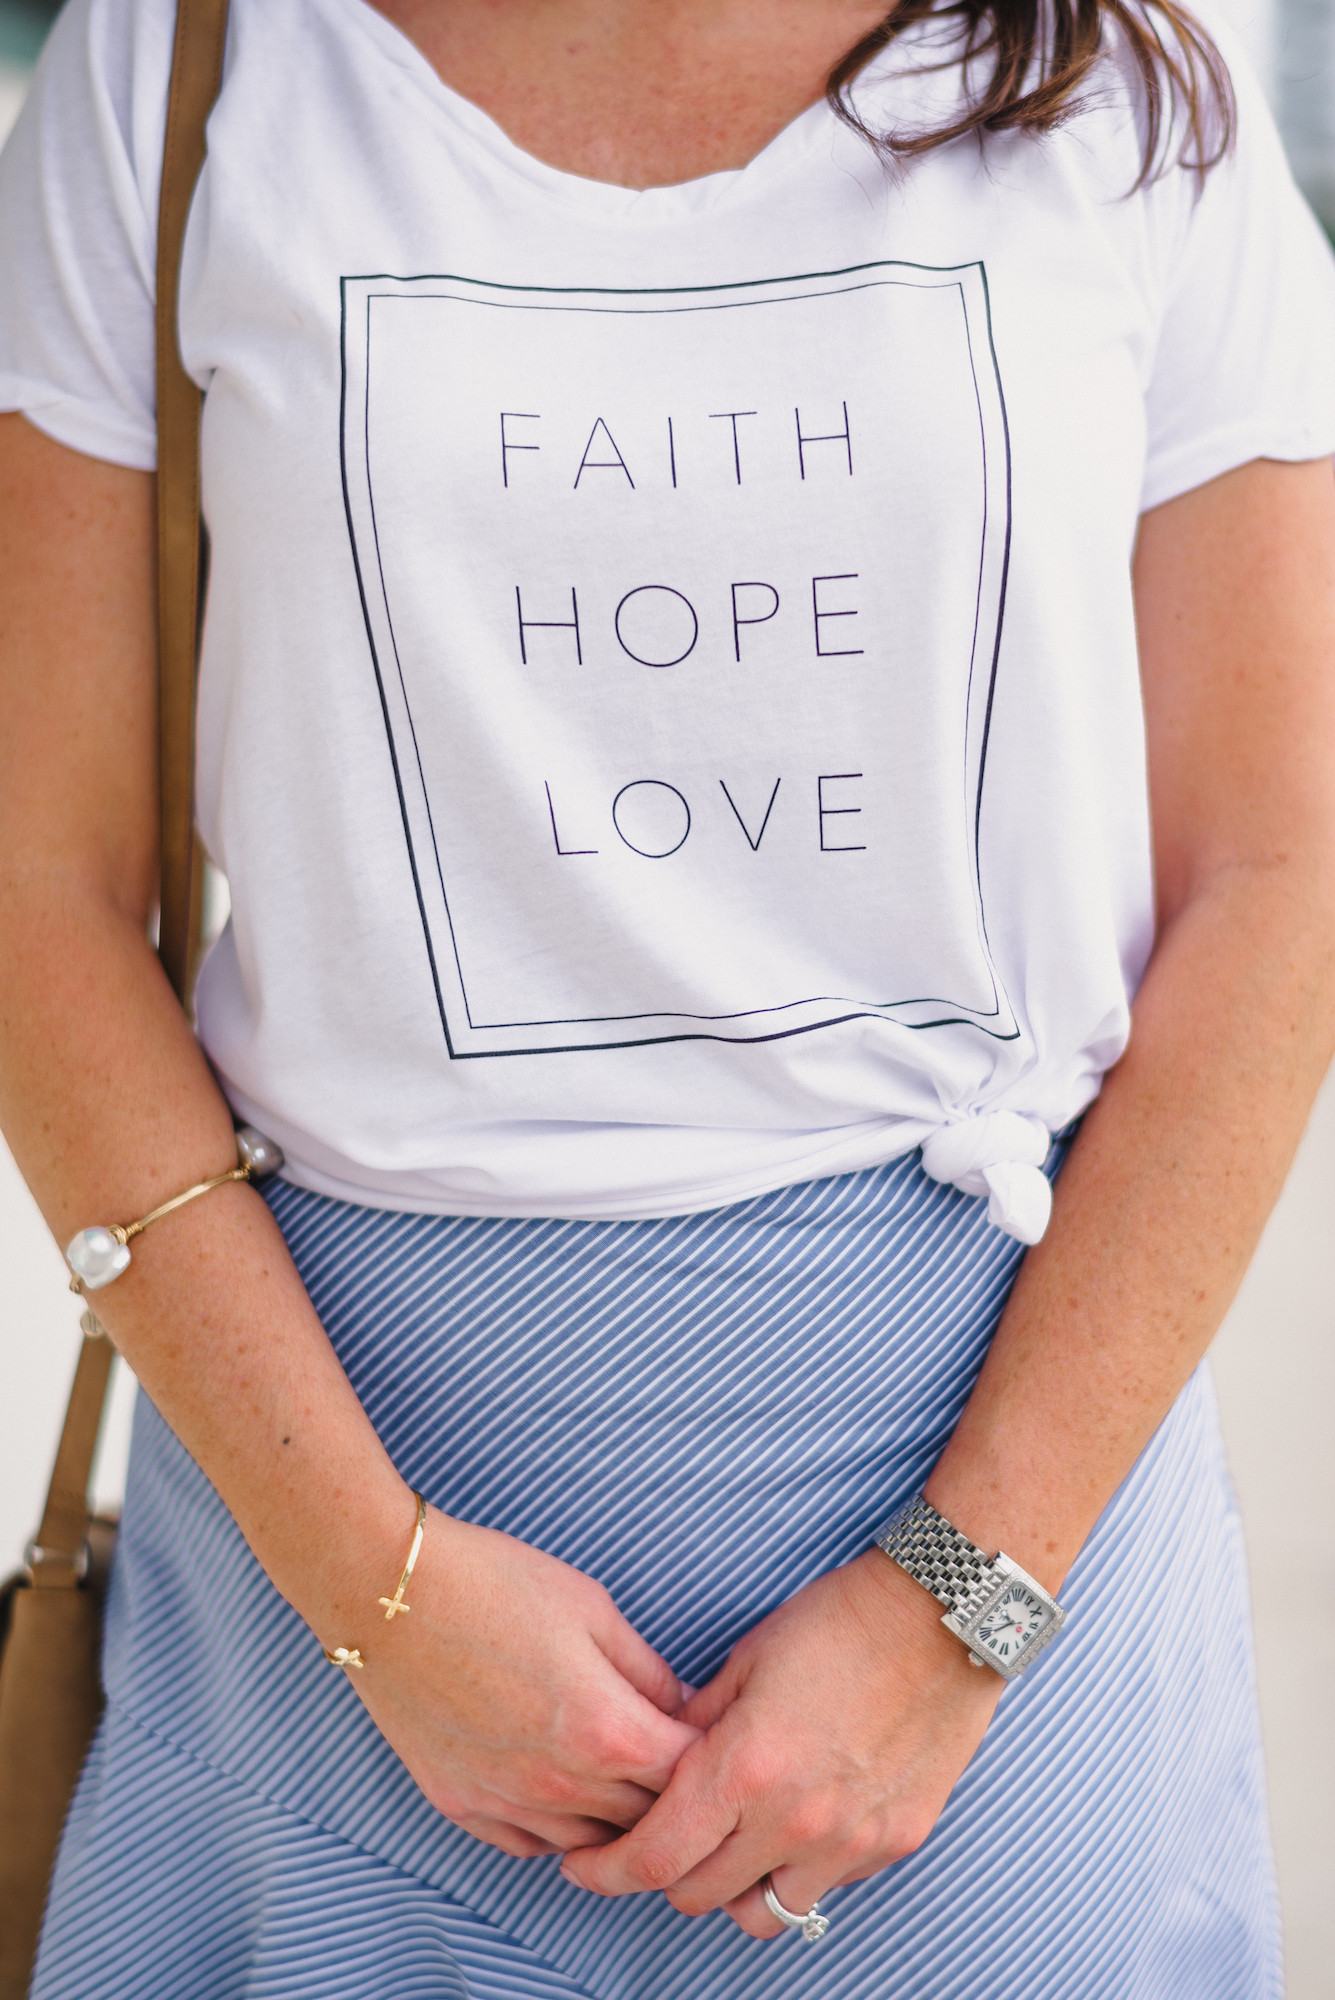 christian apparel, faith shirt, baptize, testimony